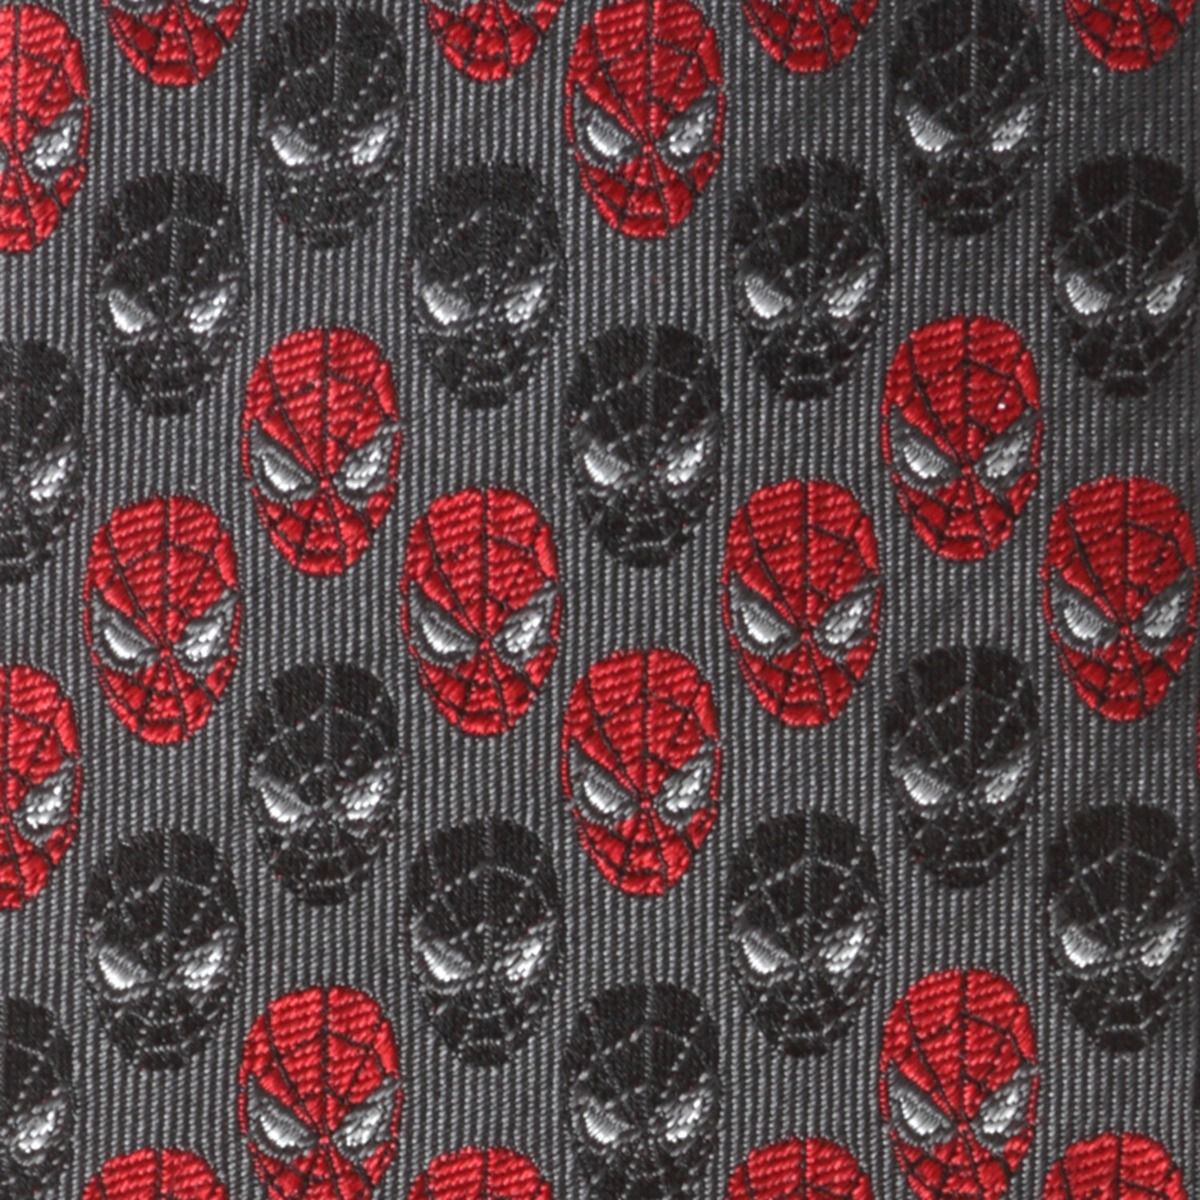 Spider-Man Chevron (Red & Black) Marvel Fine Necktie